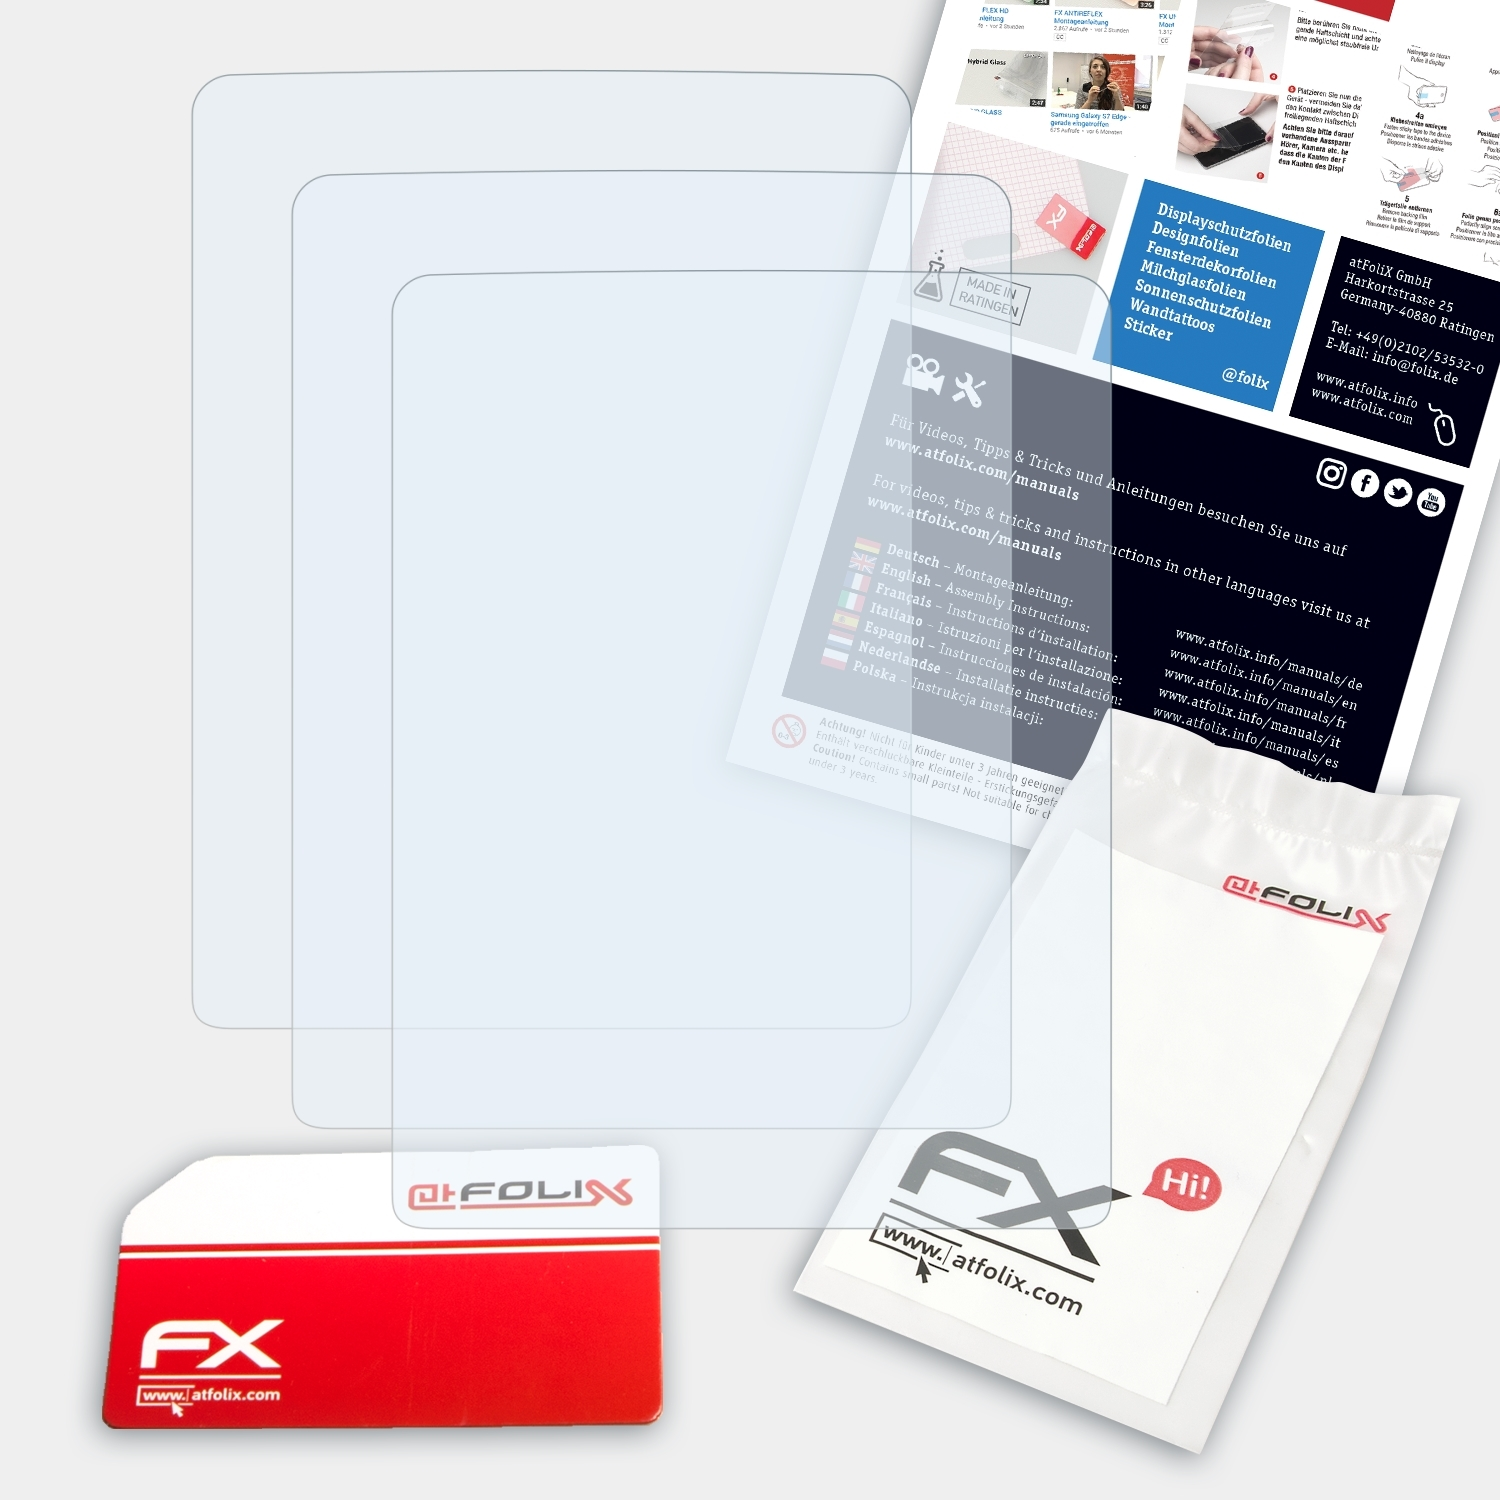 ATFOLIX 3x FX-Clear Displayschutz(für Samsung B2100)